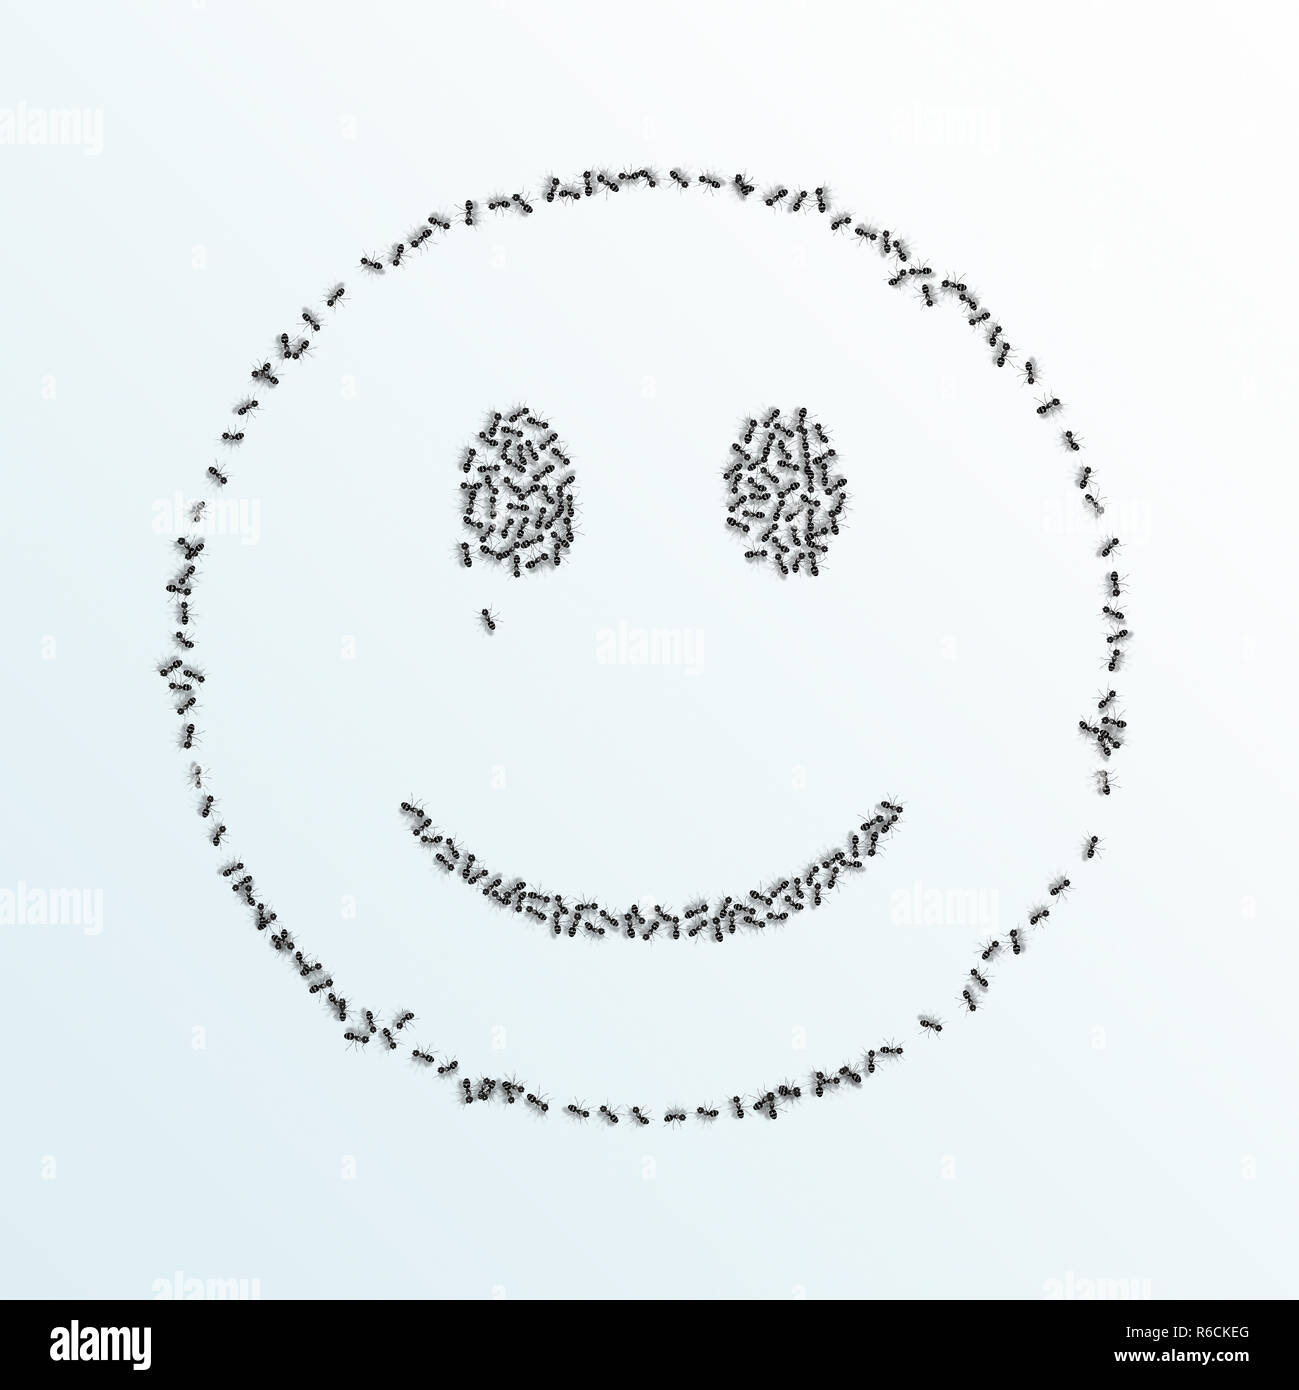 Imagen digital monocroma de hormigas formando un esbozo de una cara sonriente sobre un fondo blanco. Foto de stock